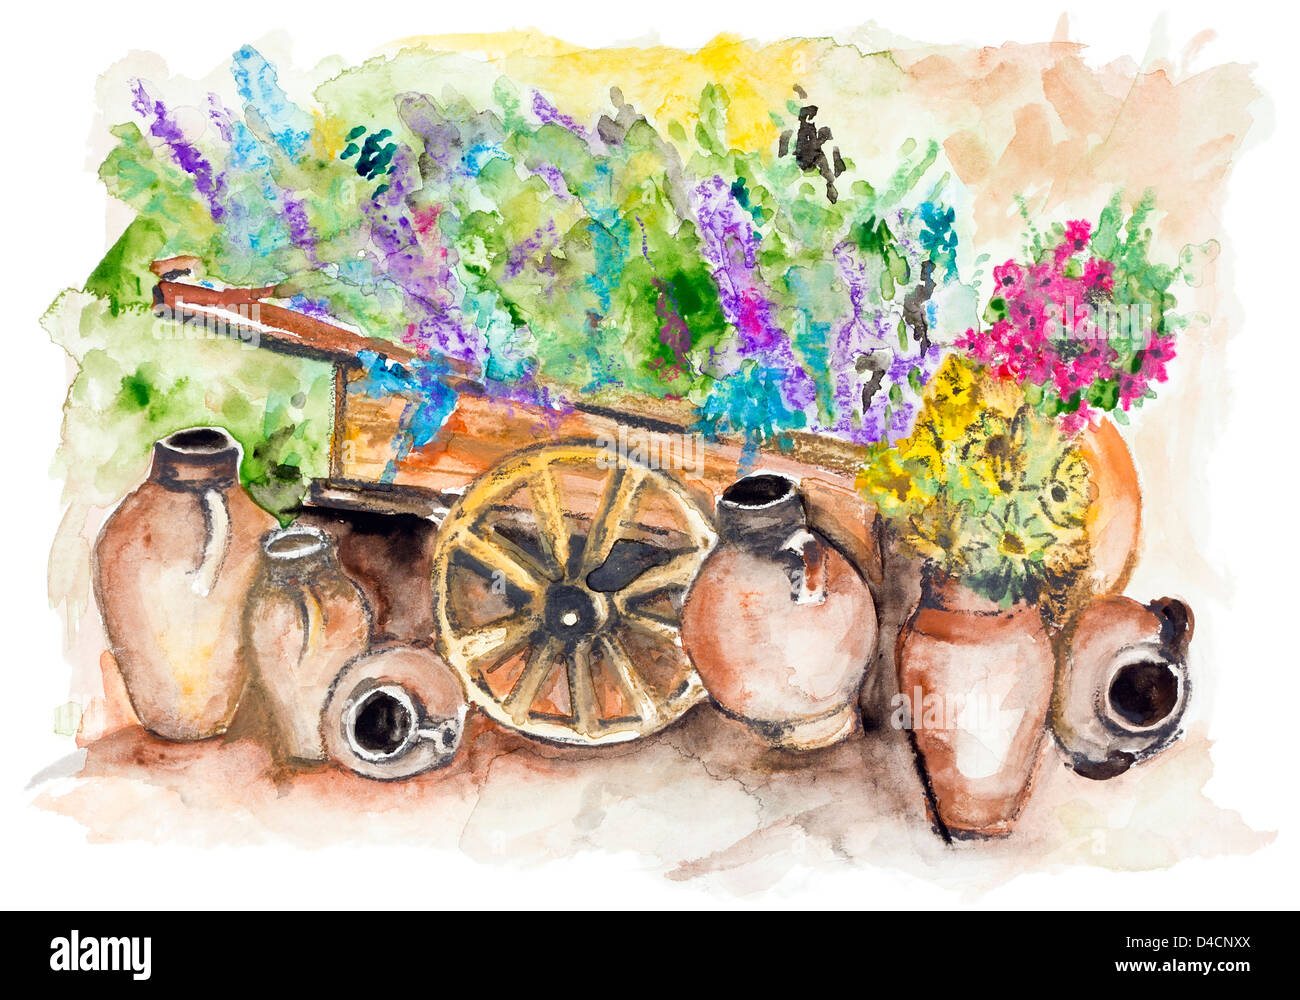 Le panier en bois en milieu rural avec des bouquets de fleurs de lavande, beaucoup de grands pots en argile avec des tournesols- aquarelle fait main Banque D'Images